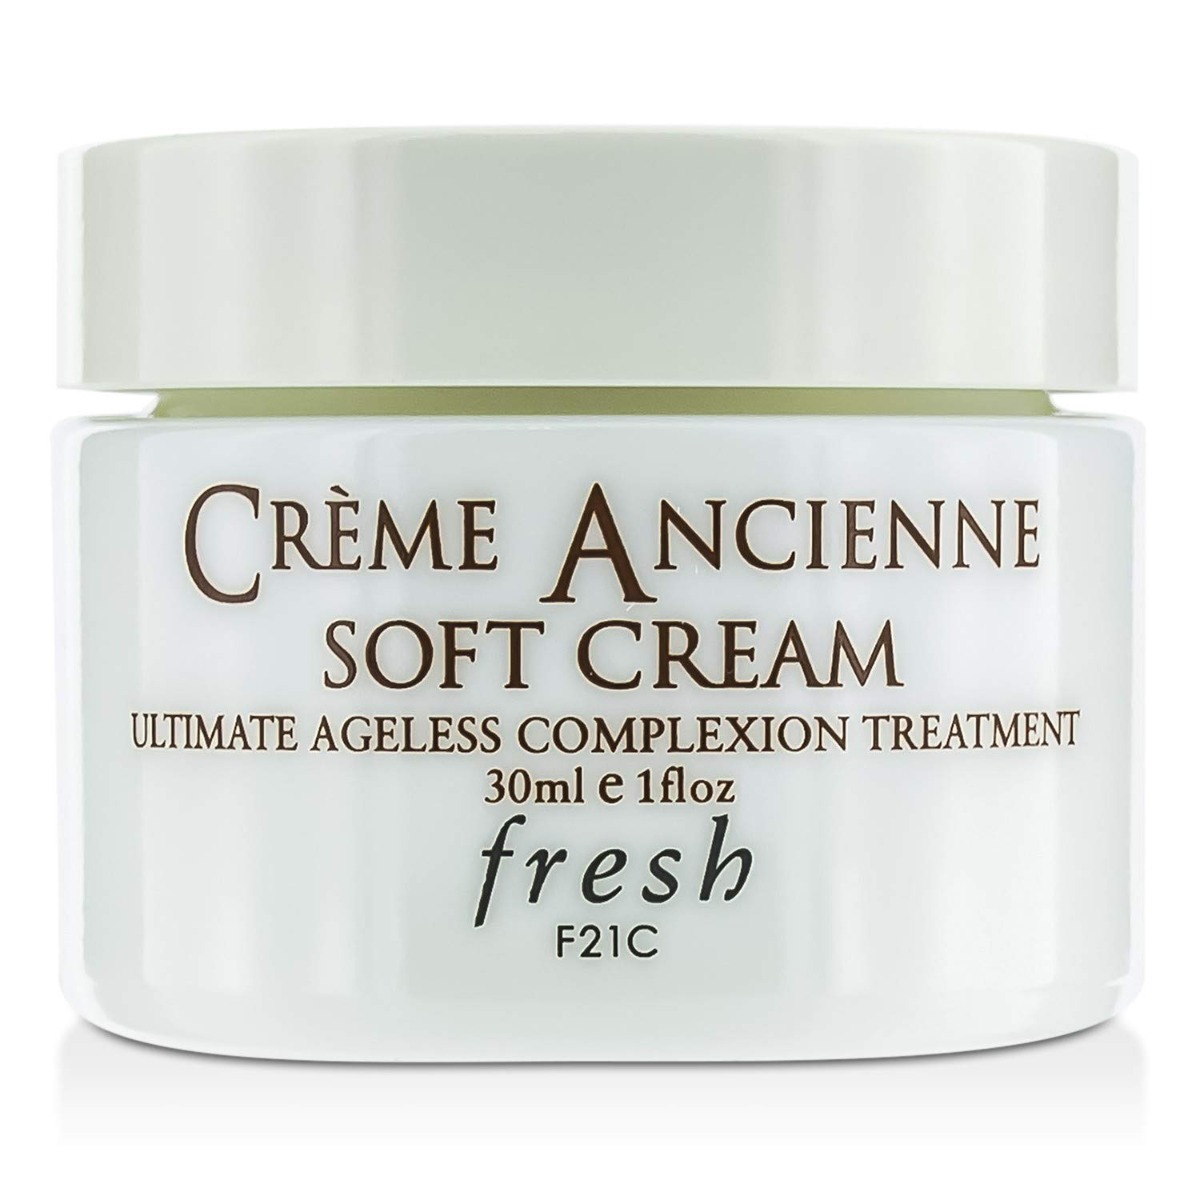 Fresh Crème Ancienne Soft Cream 30ml 